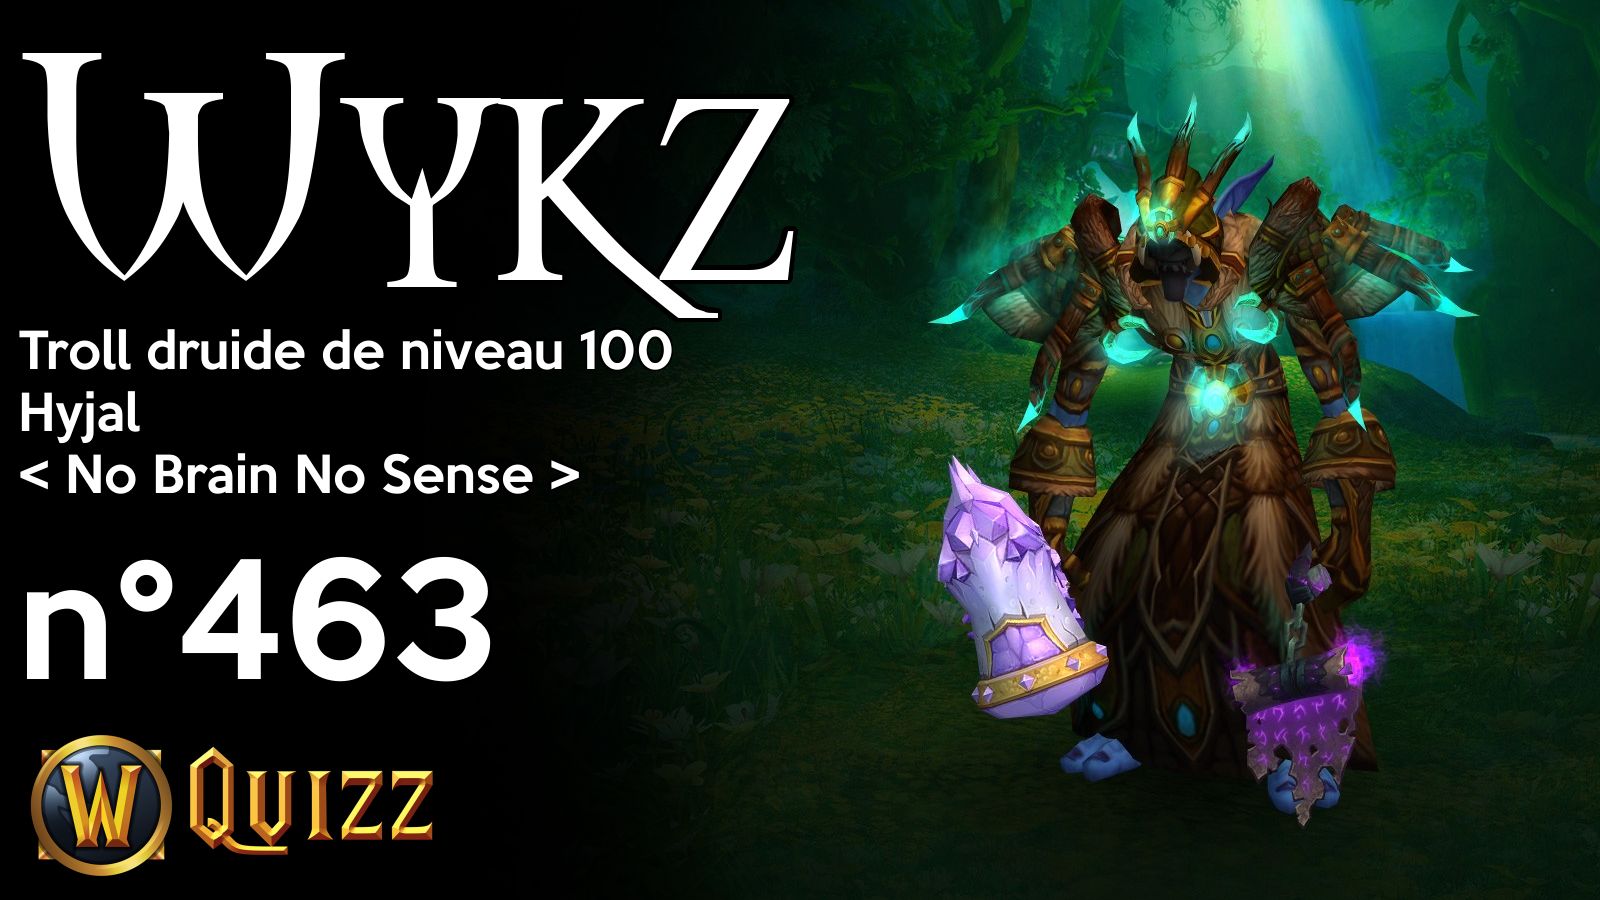 Wykz, Troll druide de niveau 100, Hyjal